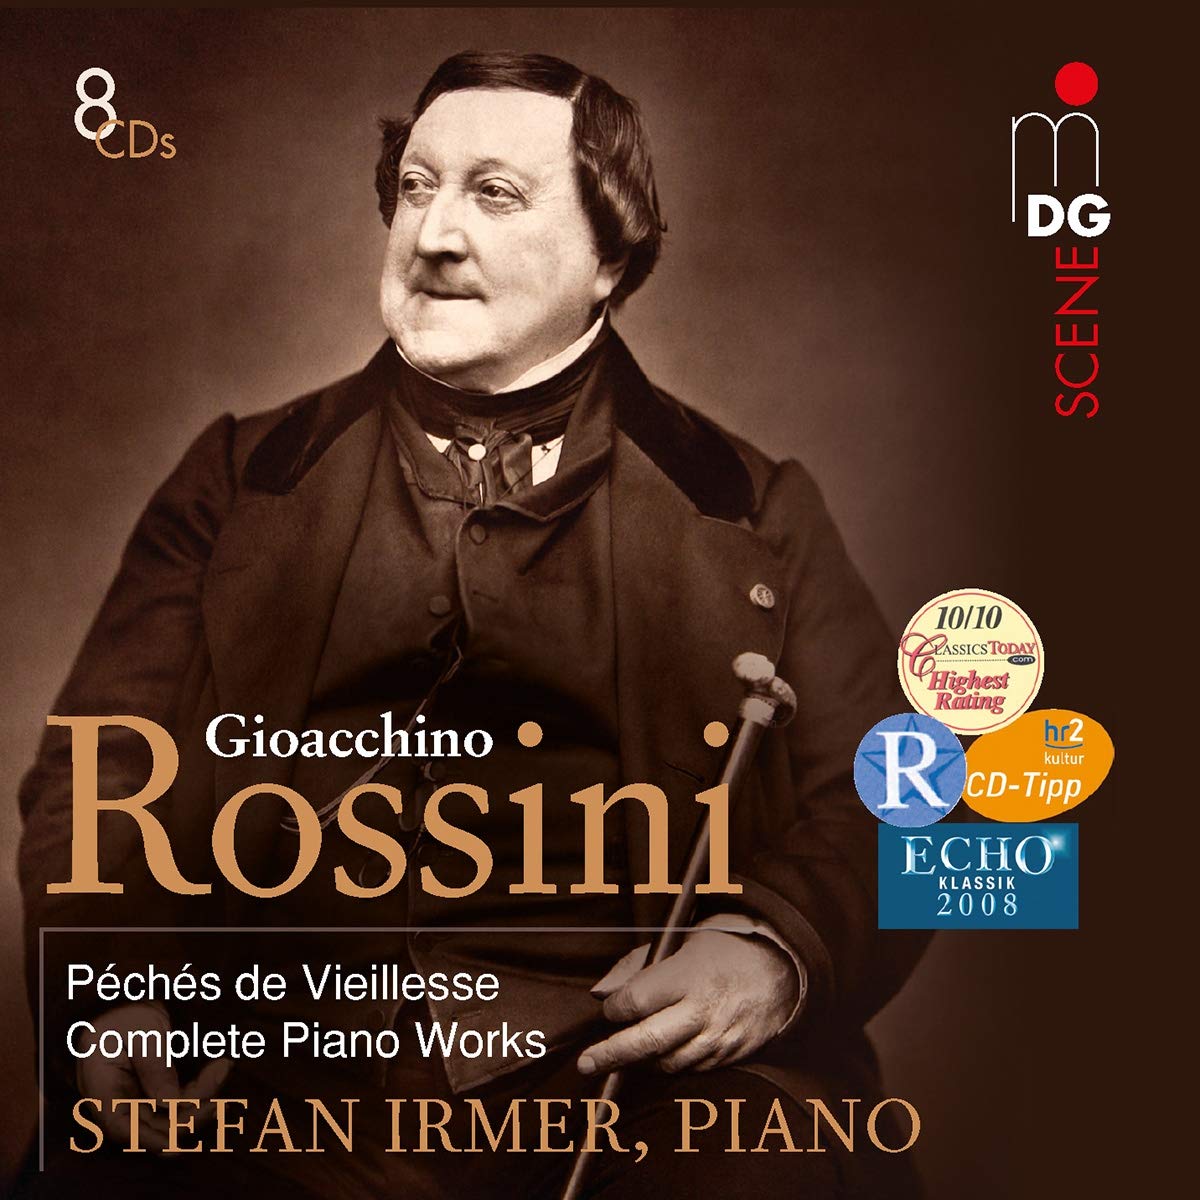 Rossini peches